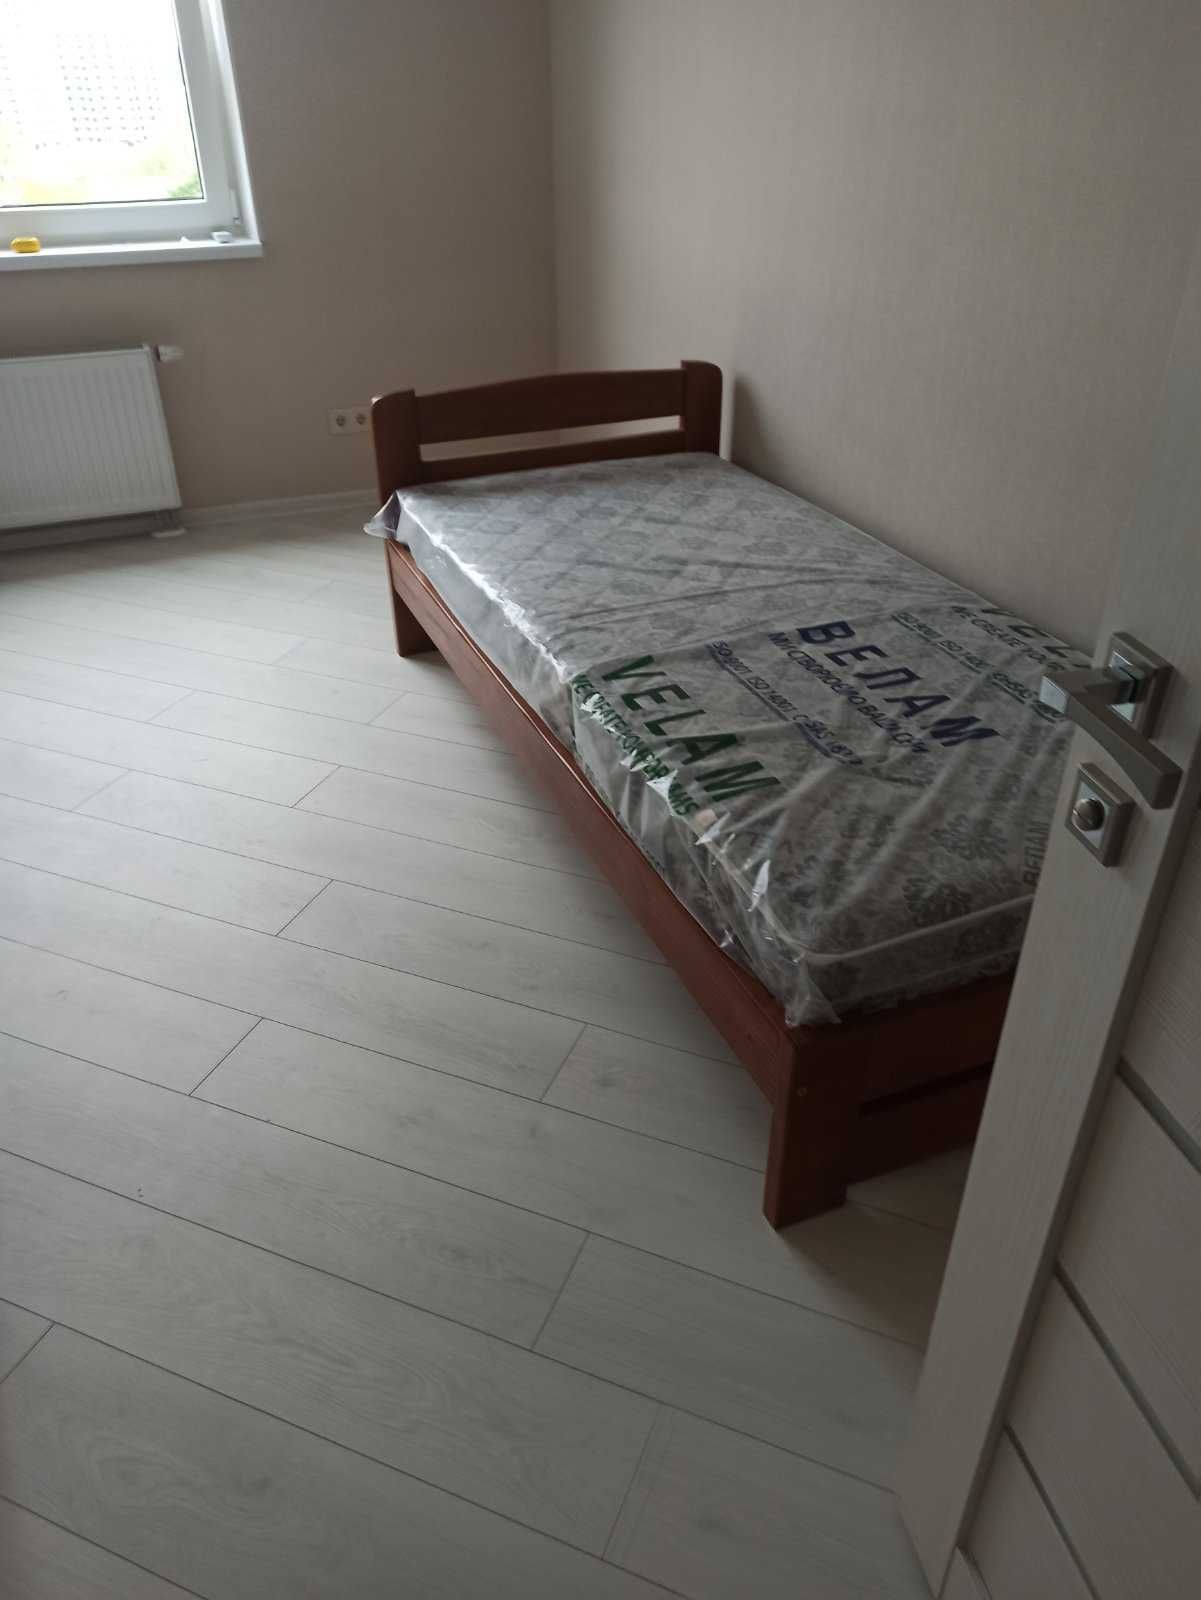 Кровать деревянная 80*200см